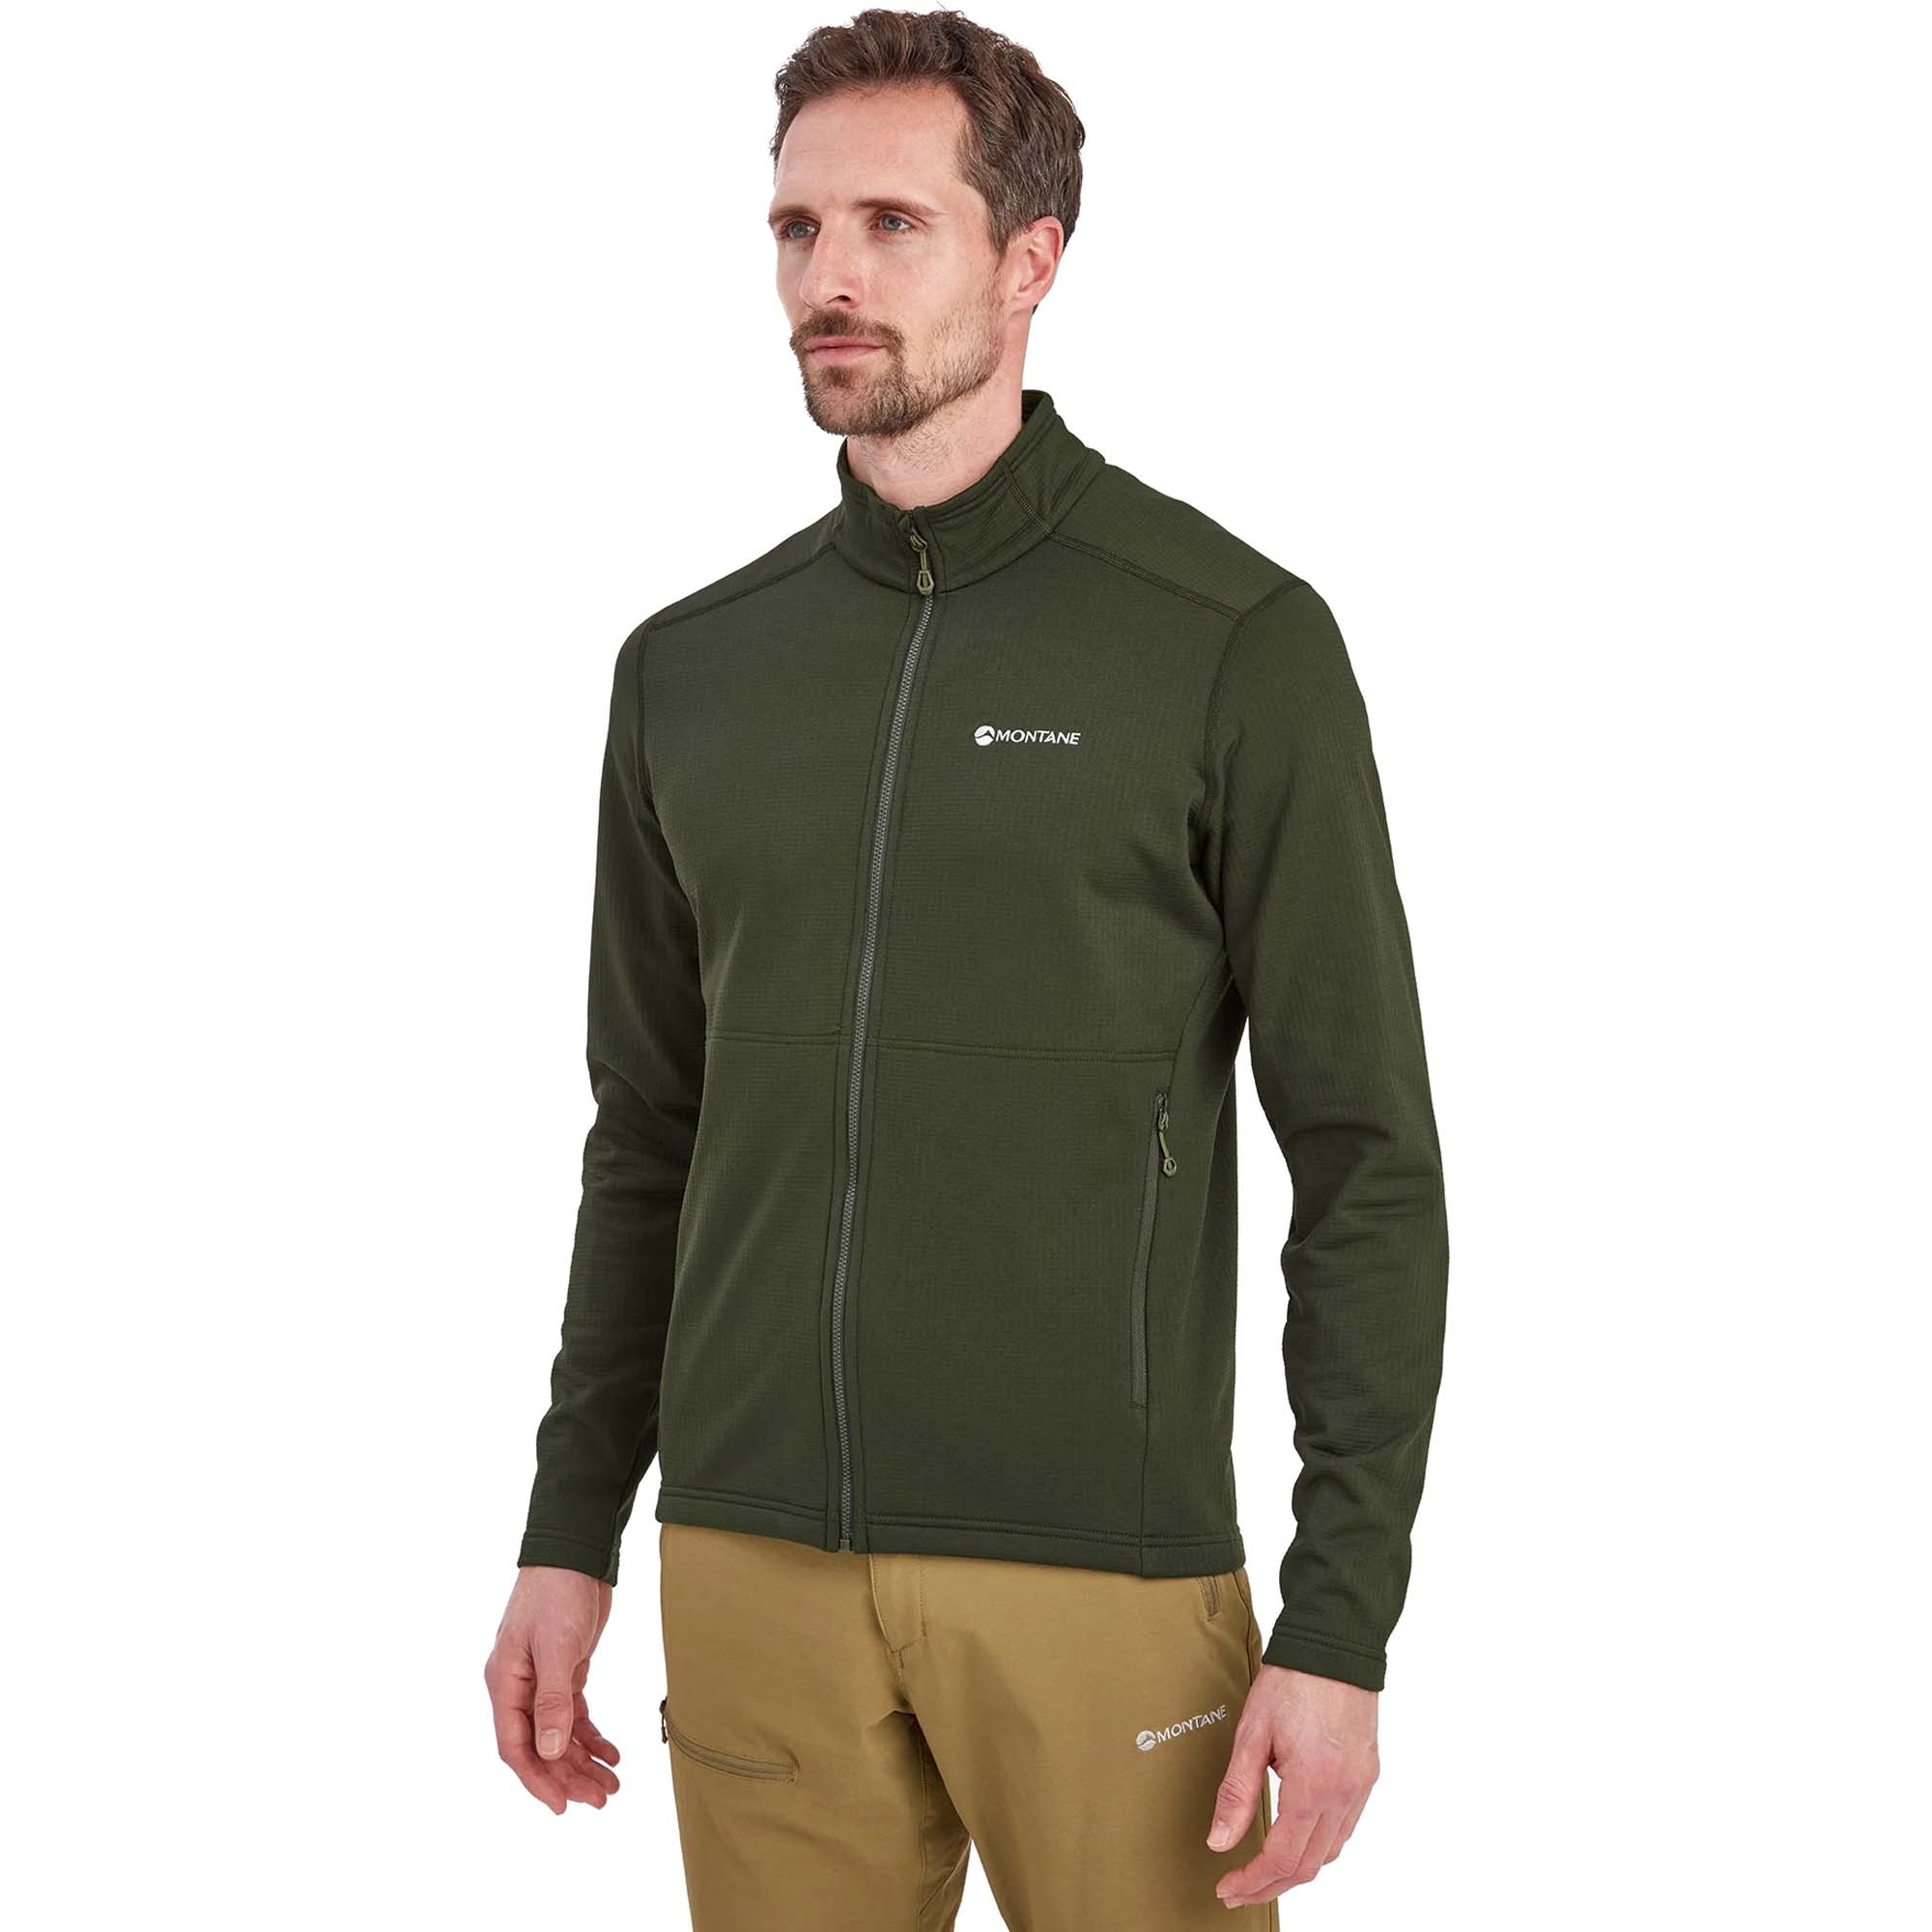 Montane Protium Technical Full-Zip Fleece Jacket